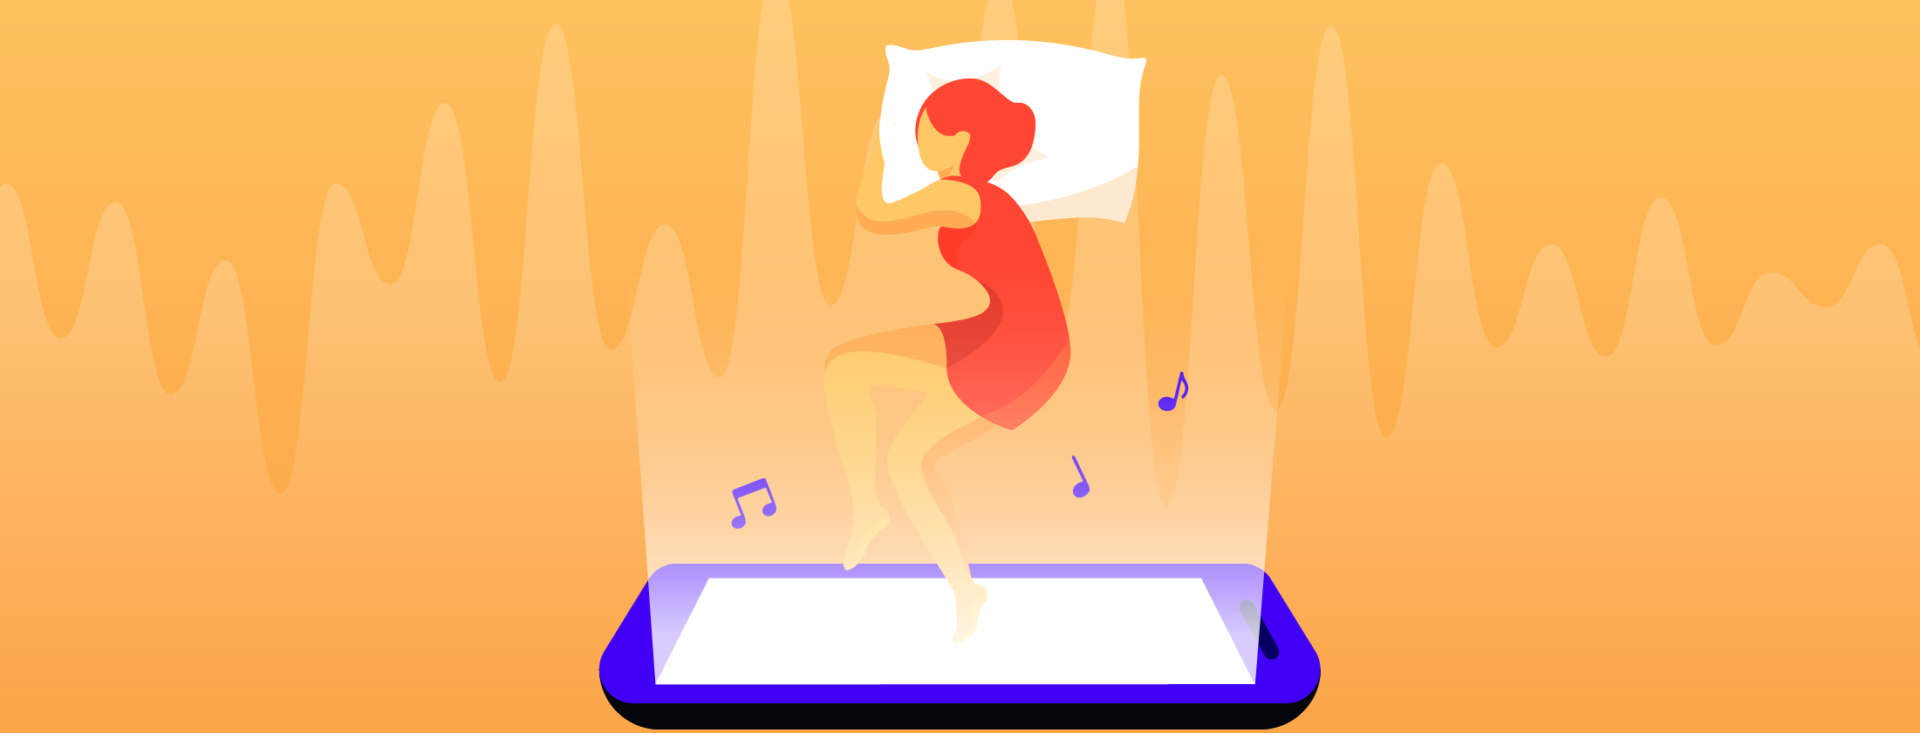 alarm clock app that plays music